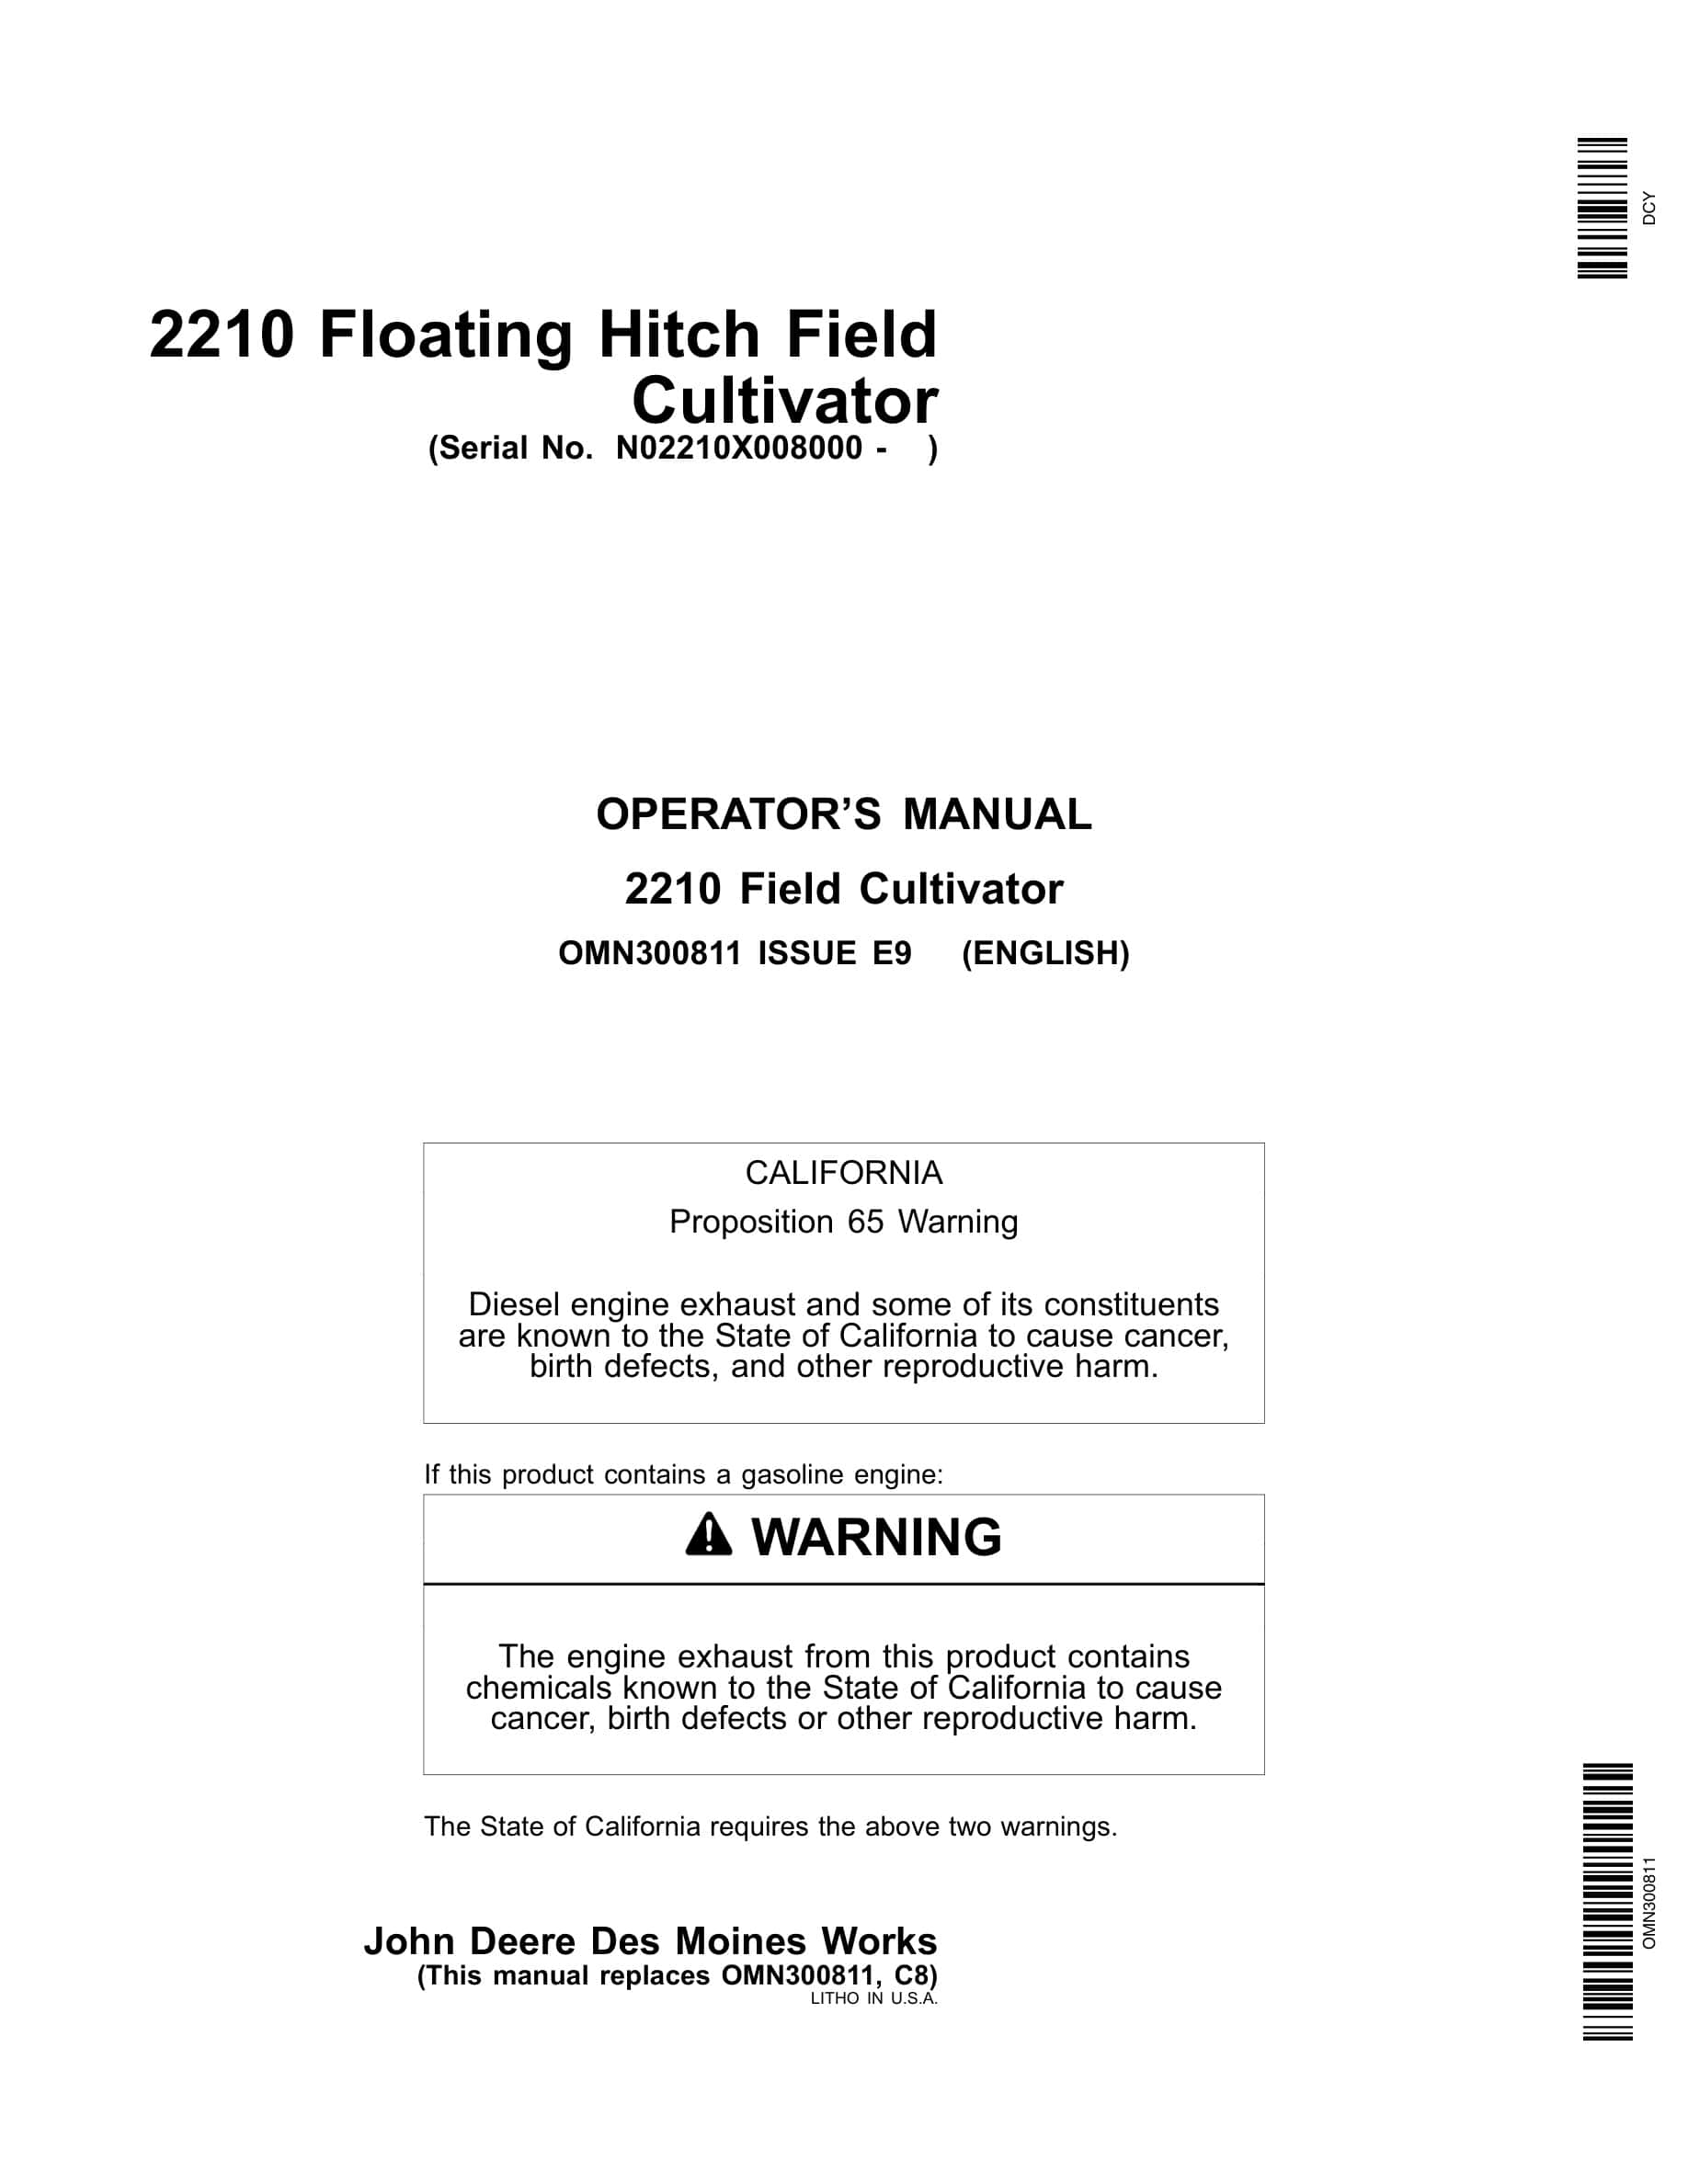 John Deere 2210 Floating Hitch Field Cultivator Operator Manual OMN300811-1